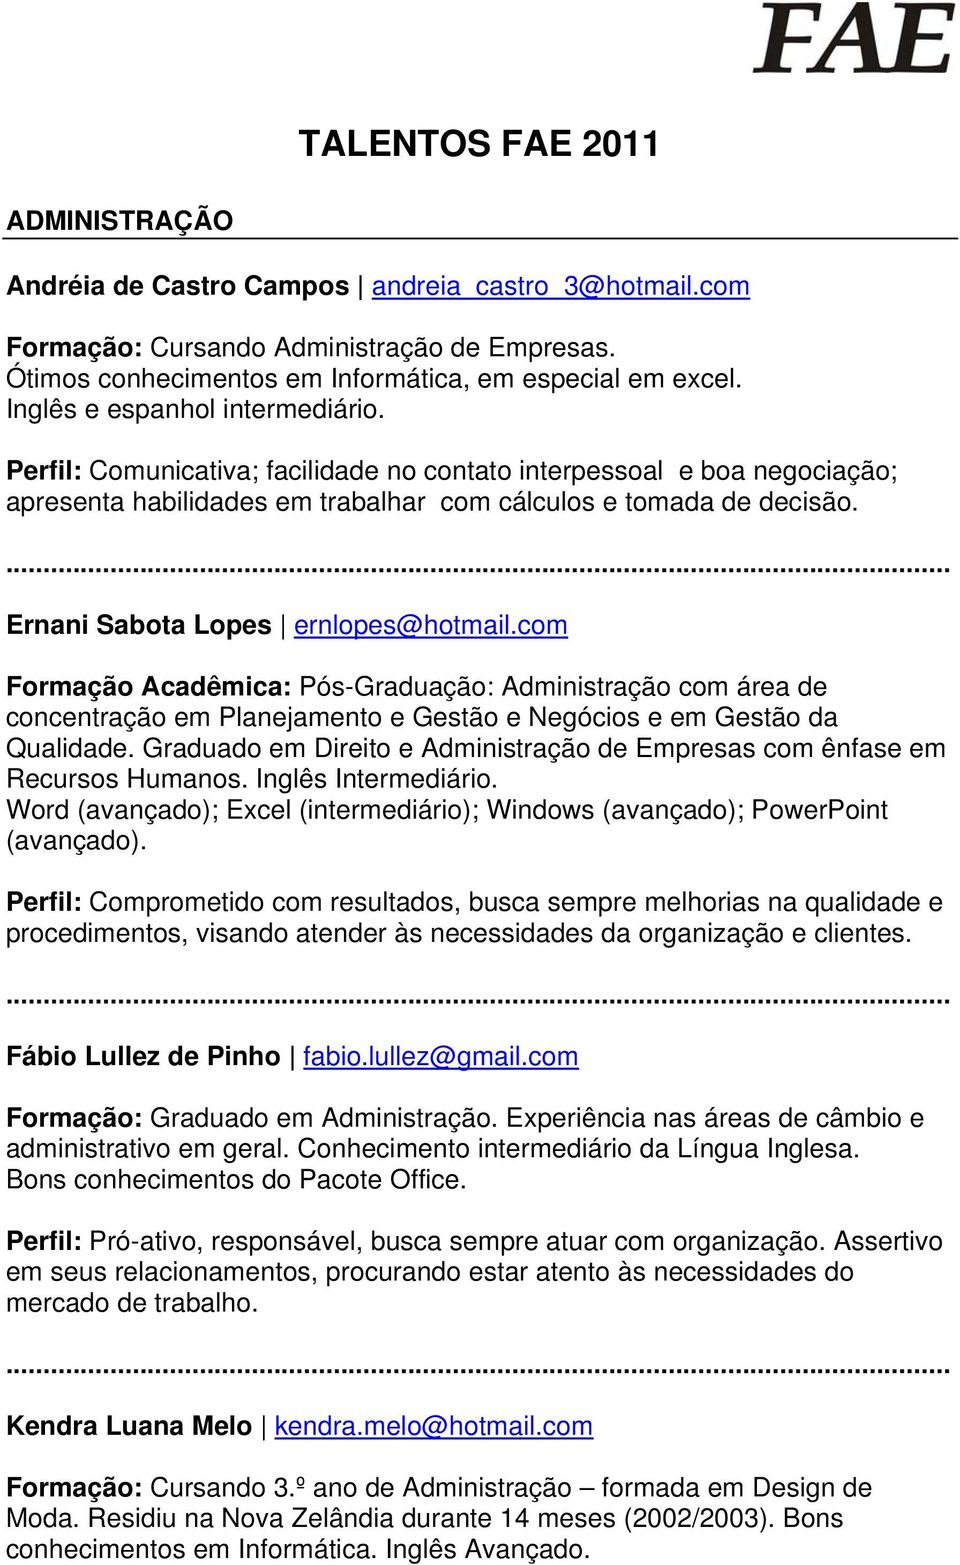 Ernani Sabota Lopes ernlopes@hotmail.com Formação Acadêmica: Pós-Graduação: Administração com área de concentração em Planejamento e Gestão e Negócios e em Gestão da Qualidade.